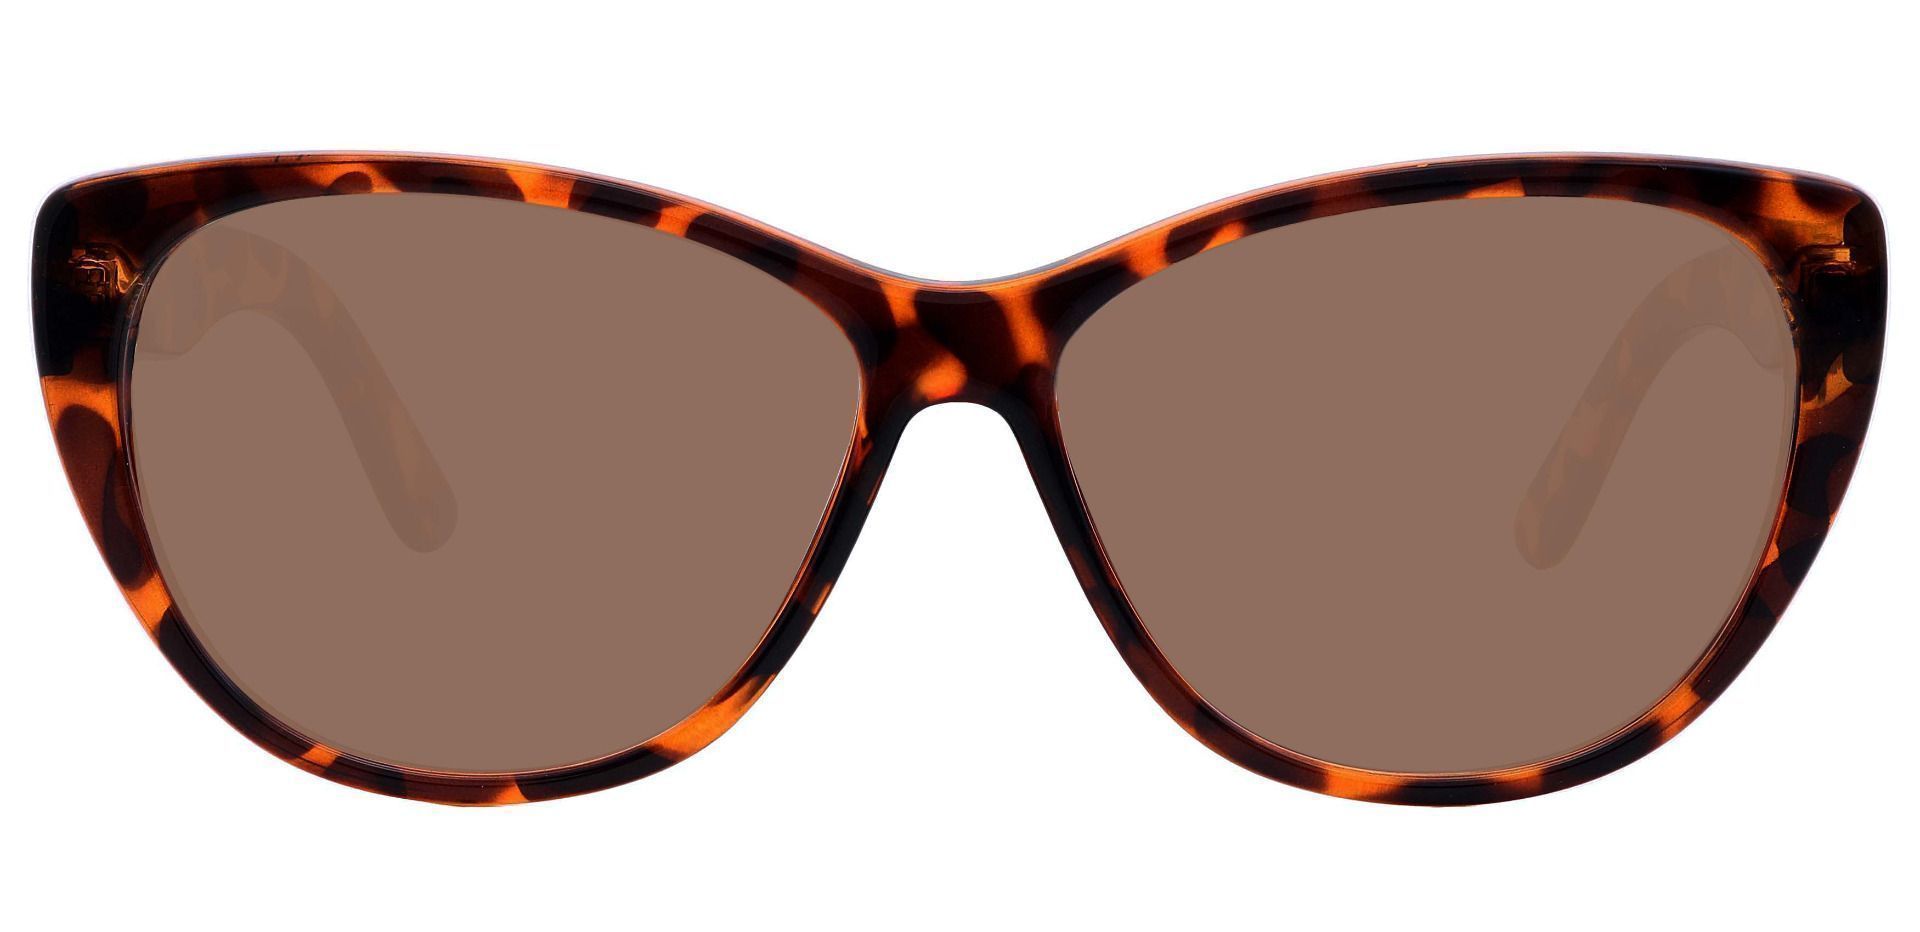 Lynn Cat-Eye Lined Bifocal Sunglasses - Tortoise Frame With Brown Lenses